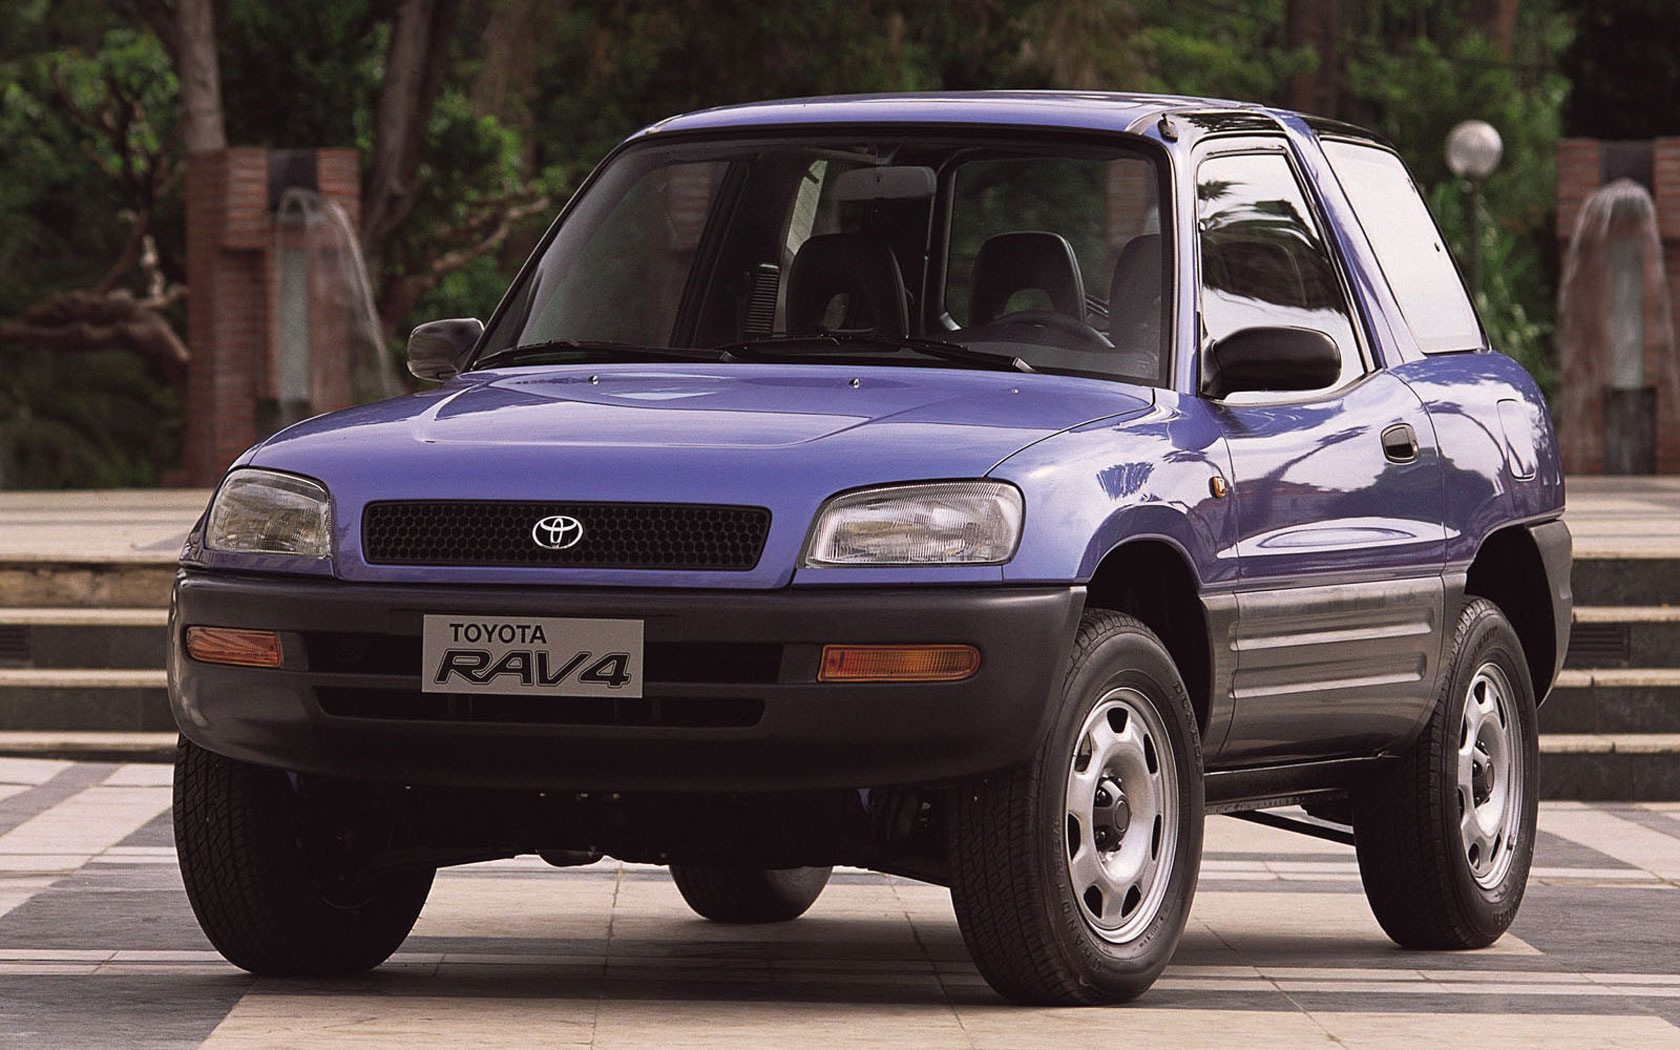 Первый рав. Toyota rav4 1994. Тойота рав 4 первого поколения. Toyota rav4 2000. Toyota rav4 1994-2000.